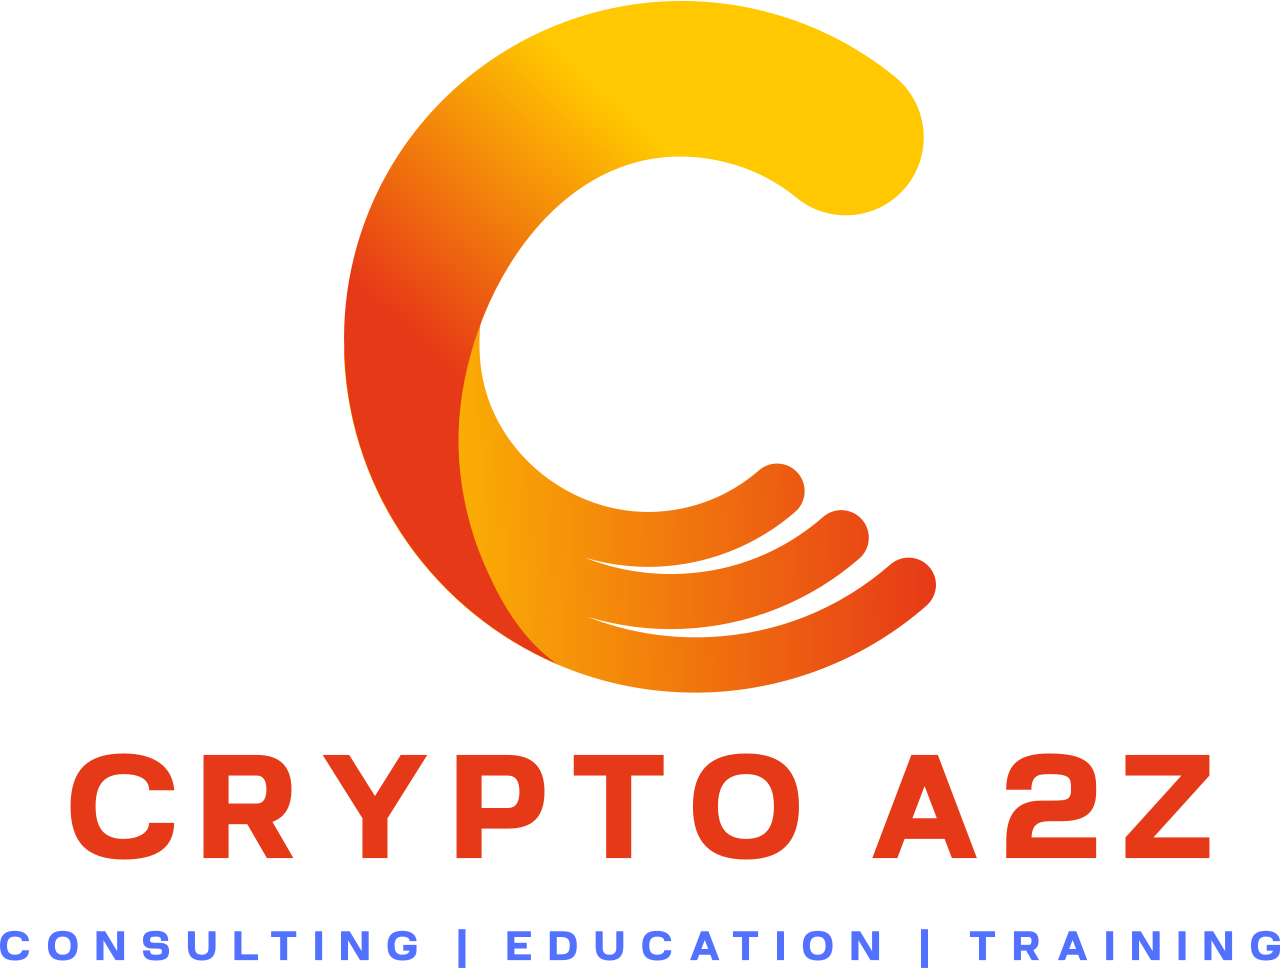 Crypto A 2 Z